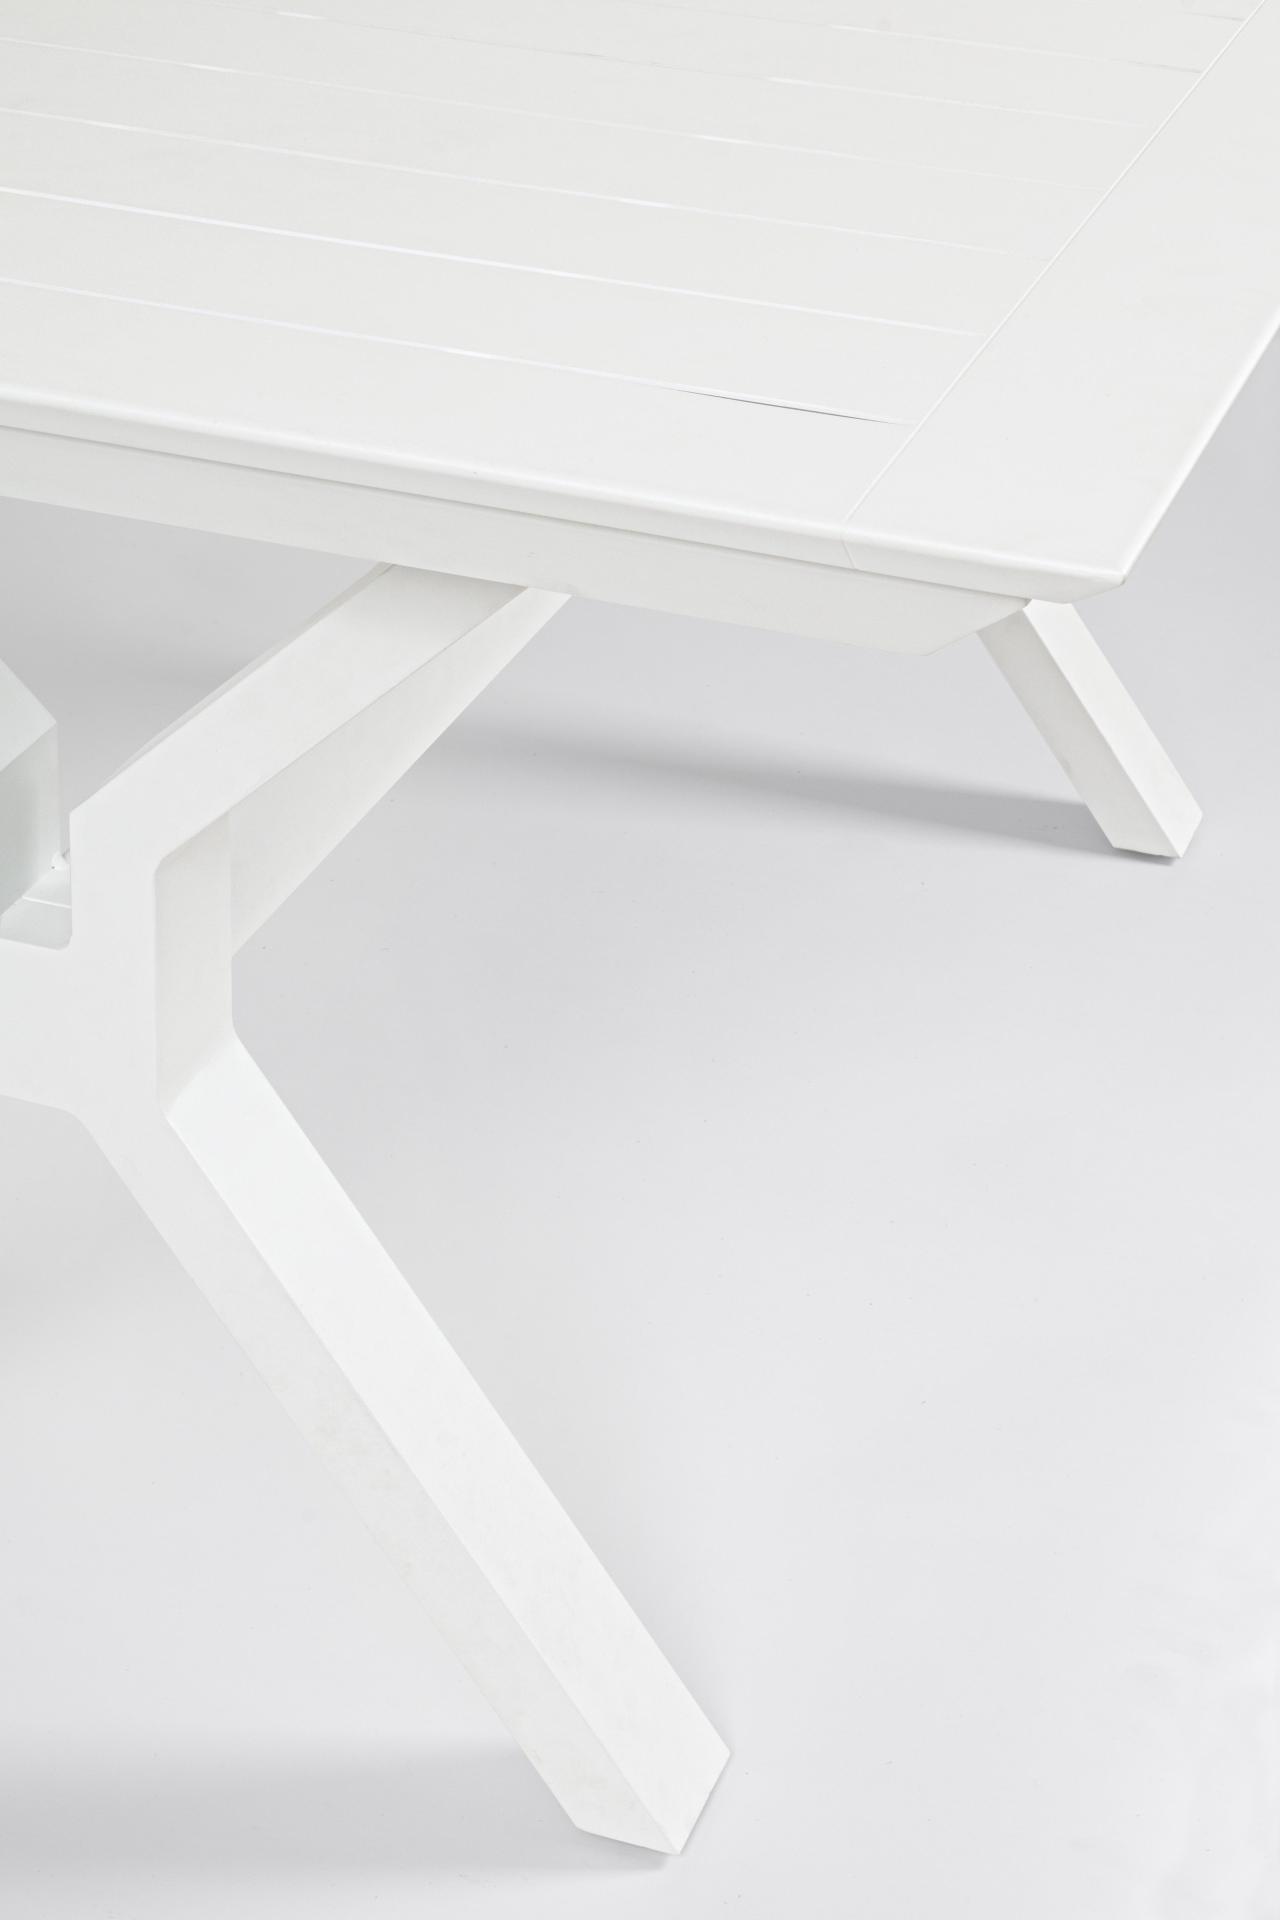 KENYON ausziehbarer Tisch 180-240x100 weiß